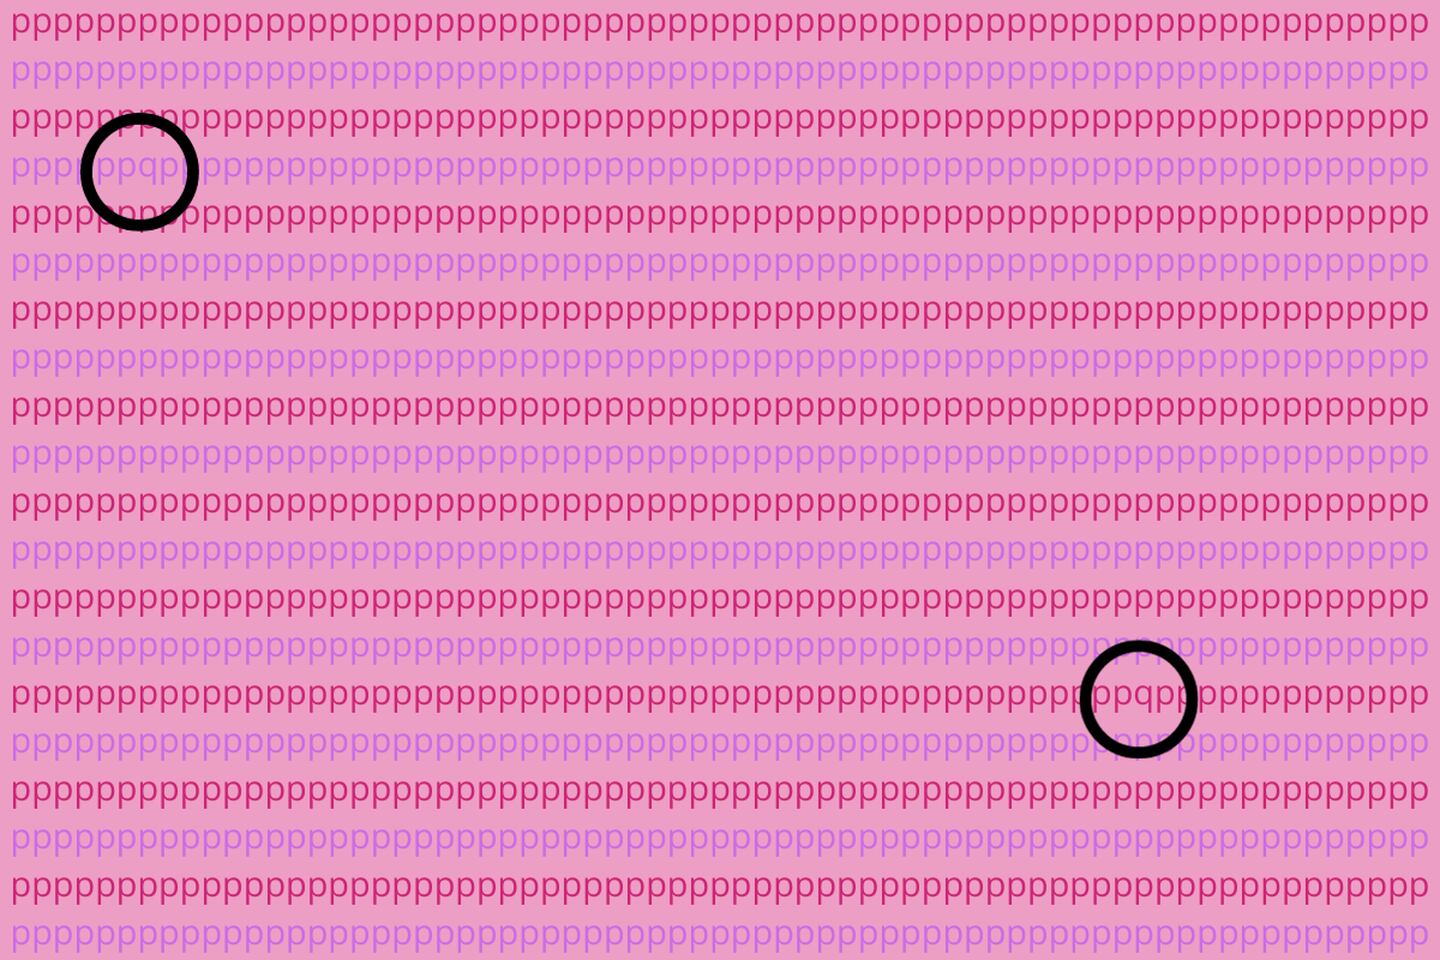 Imagen llena de "p" con un fondo rosa, y entre ellas hay dos "q" escondidas, que están señaladas con círculos negros.